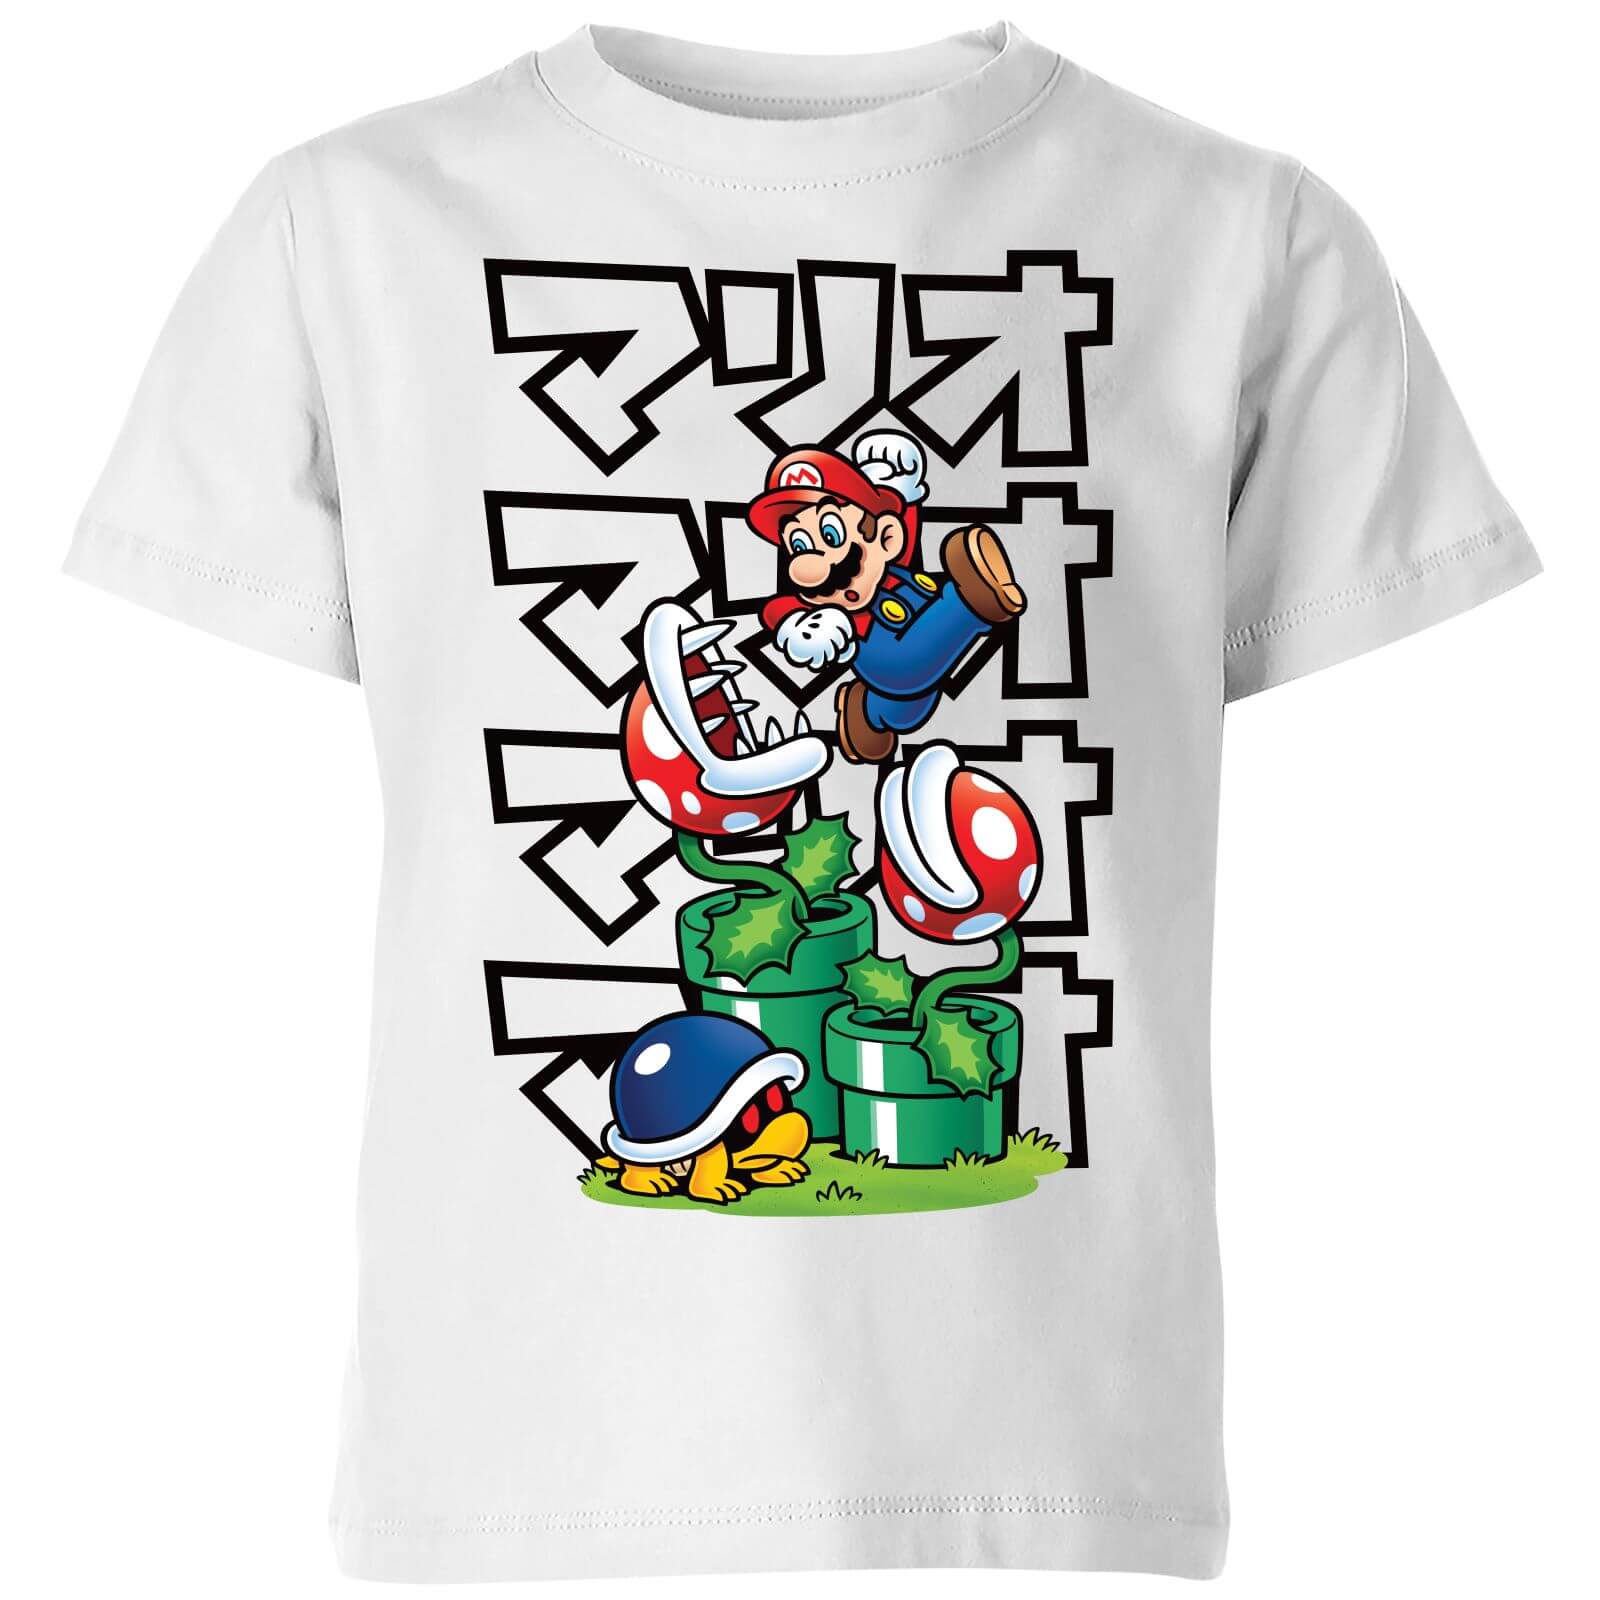 Nintendo Super Mario Piranha Plant Japanese Kids' T-Shirt - White - 5-6 Years